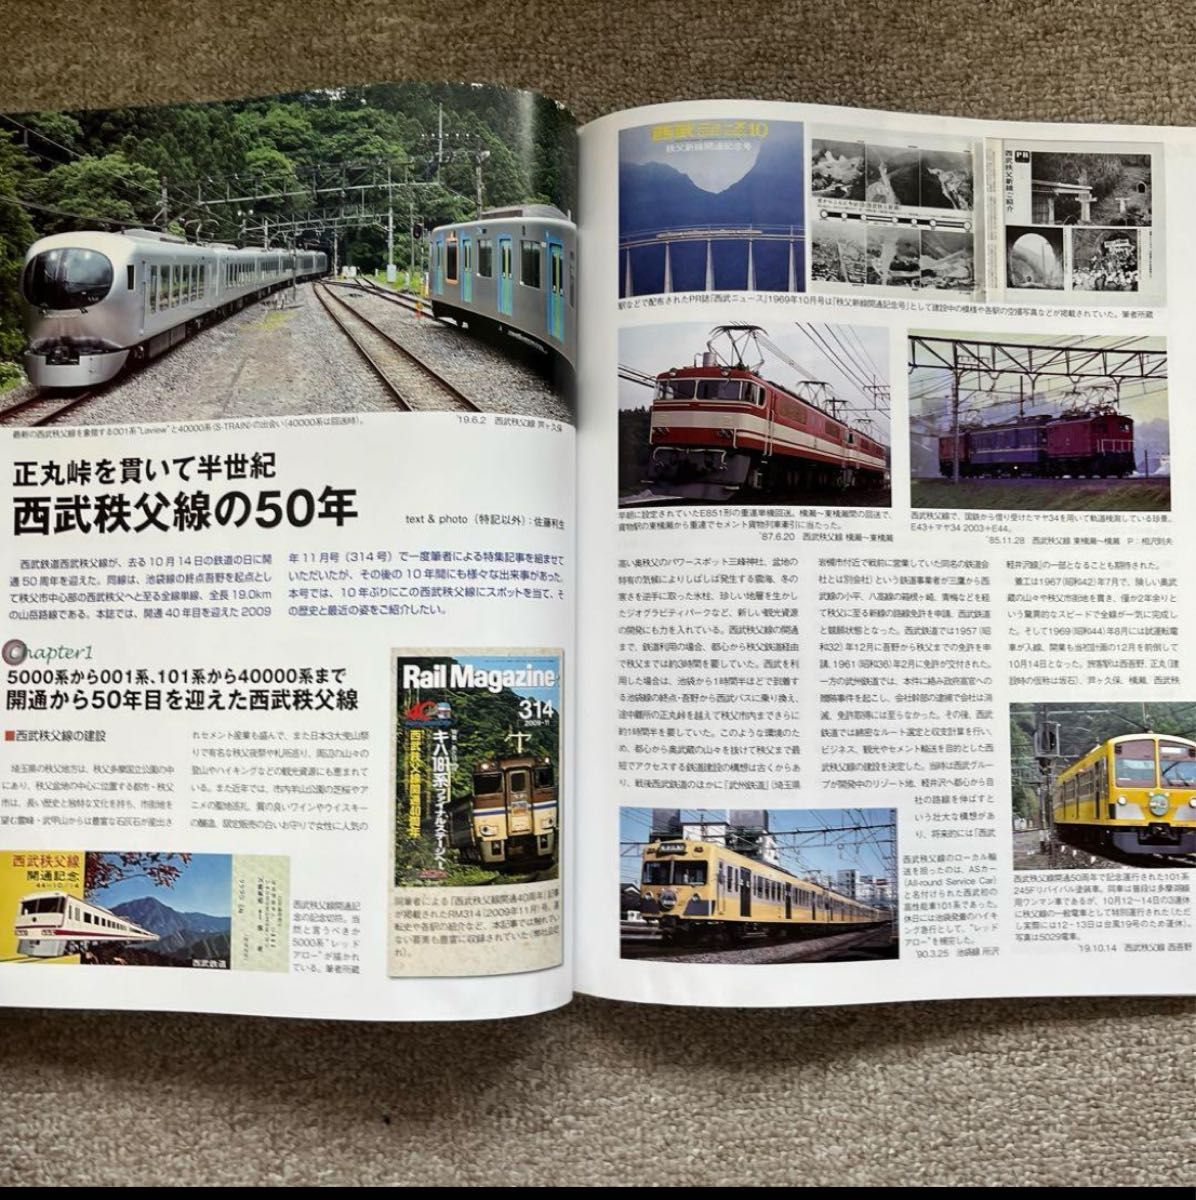 Rail magazine（レイルマガジン）　No.435　2019年12月号